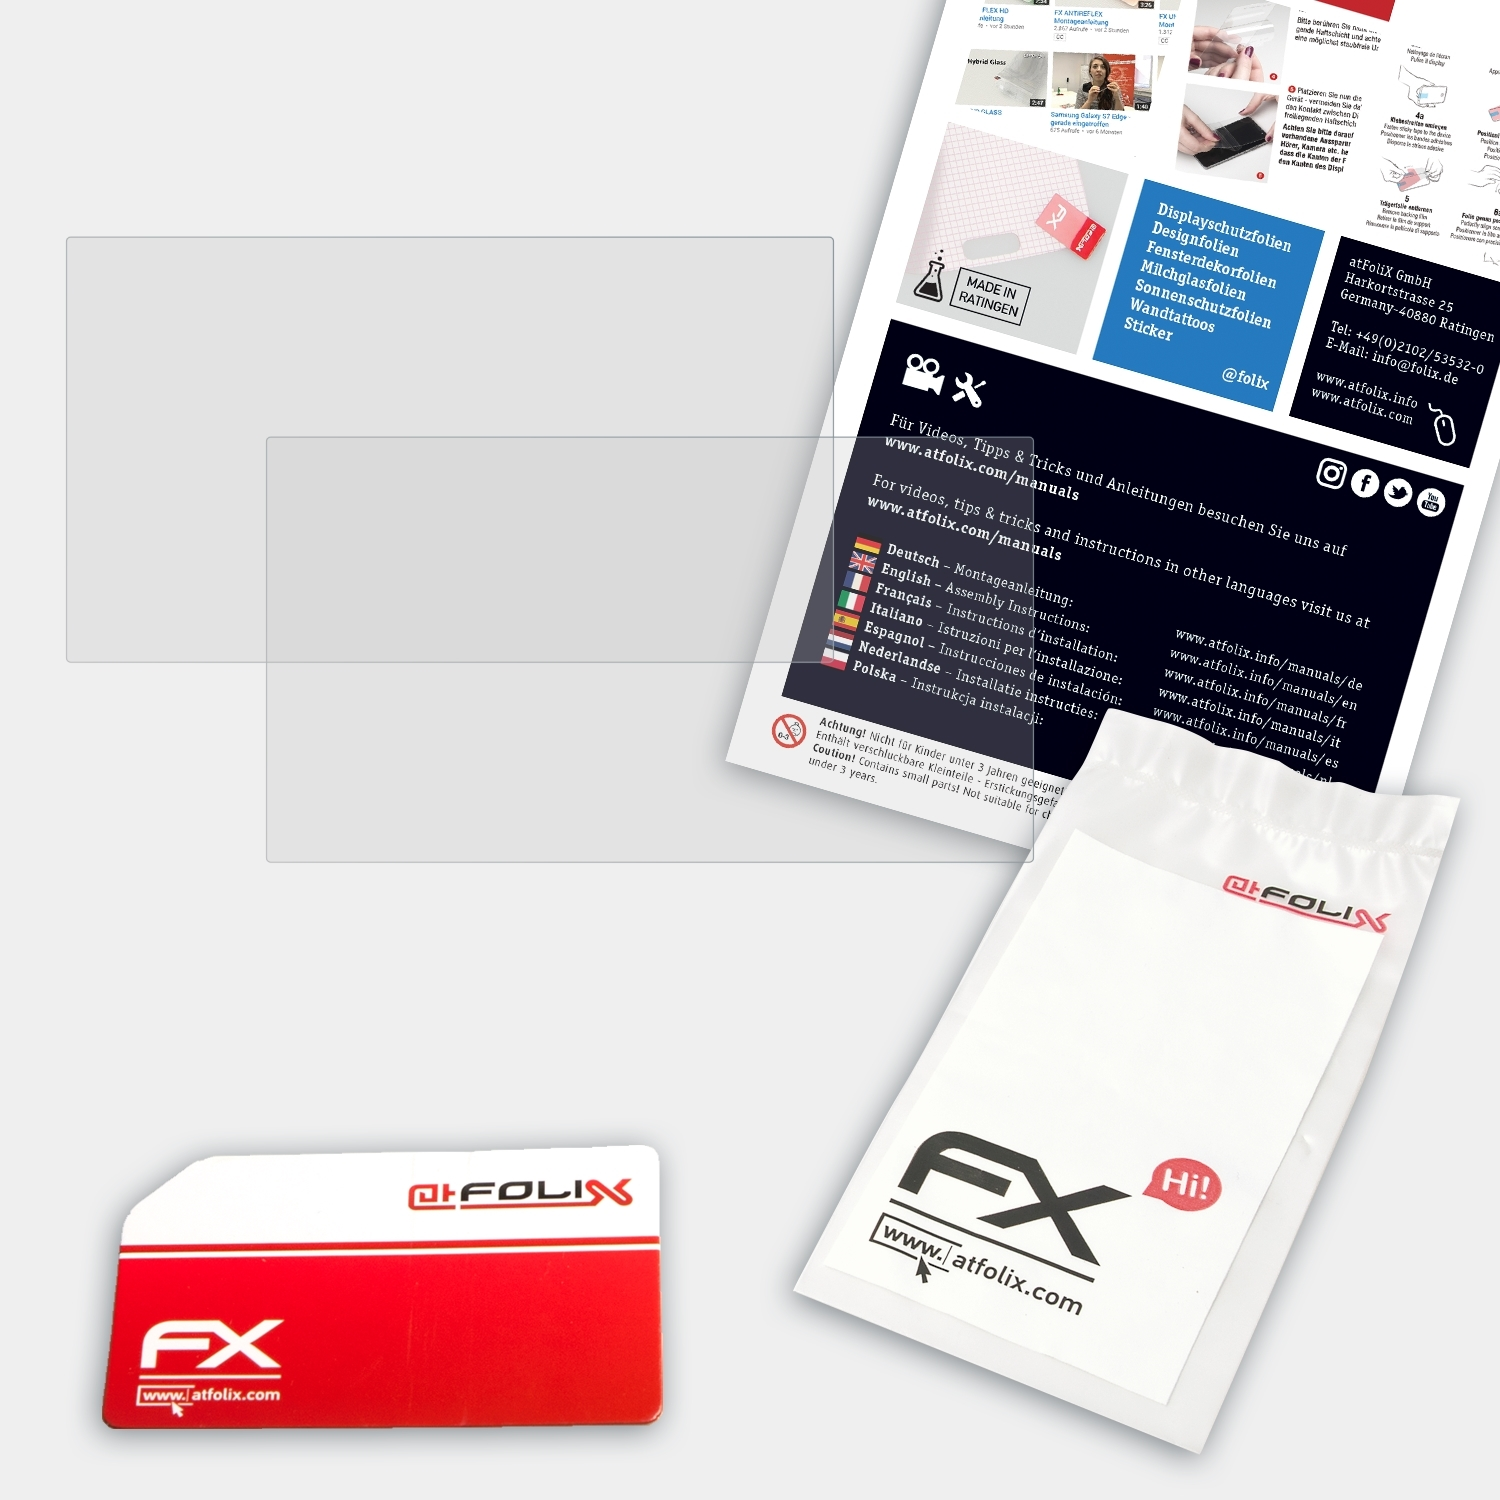 ATFOLIX FX-Antireflex Displayschutz(für Blackmagic Design 4K) Duo SmartScope